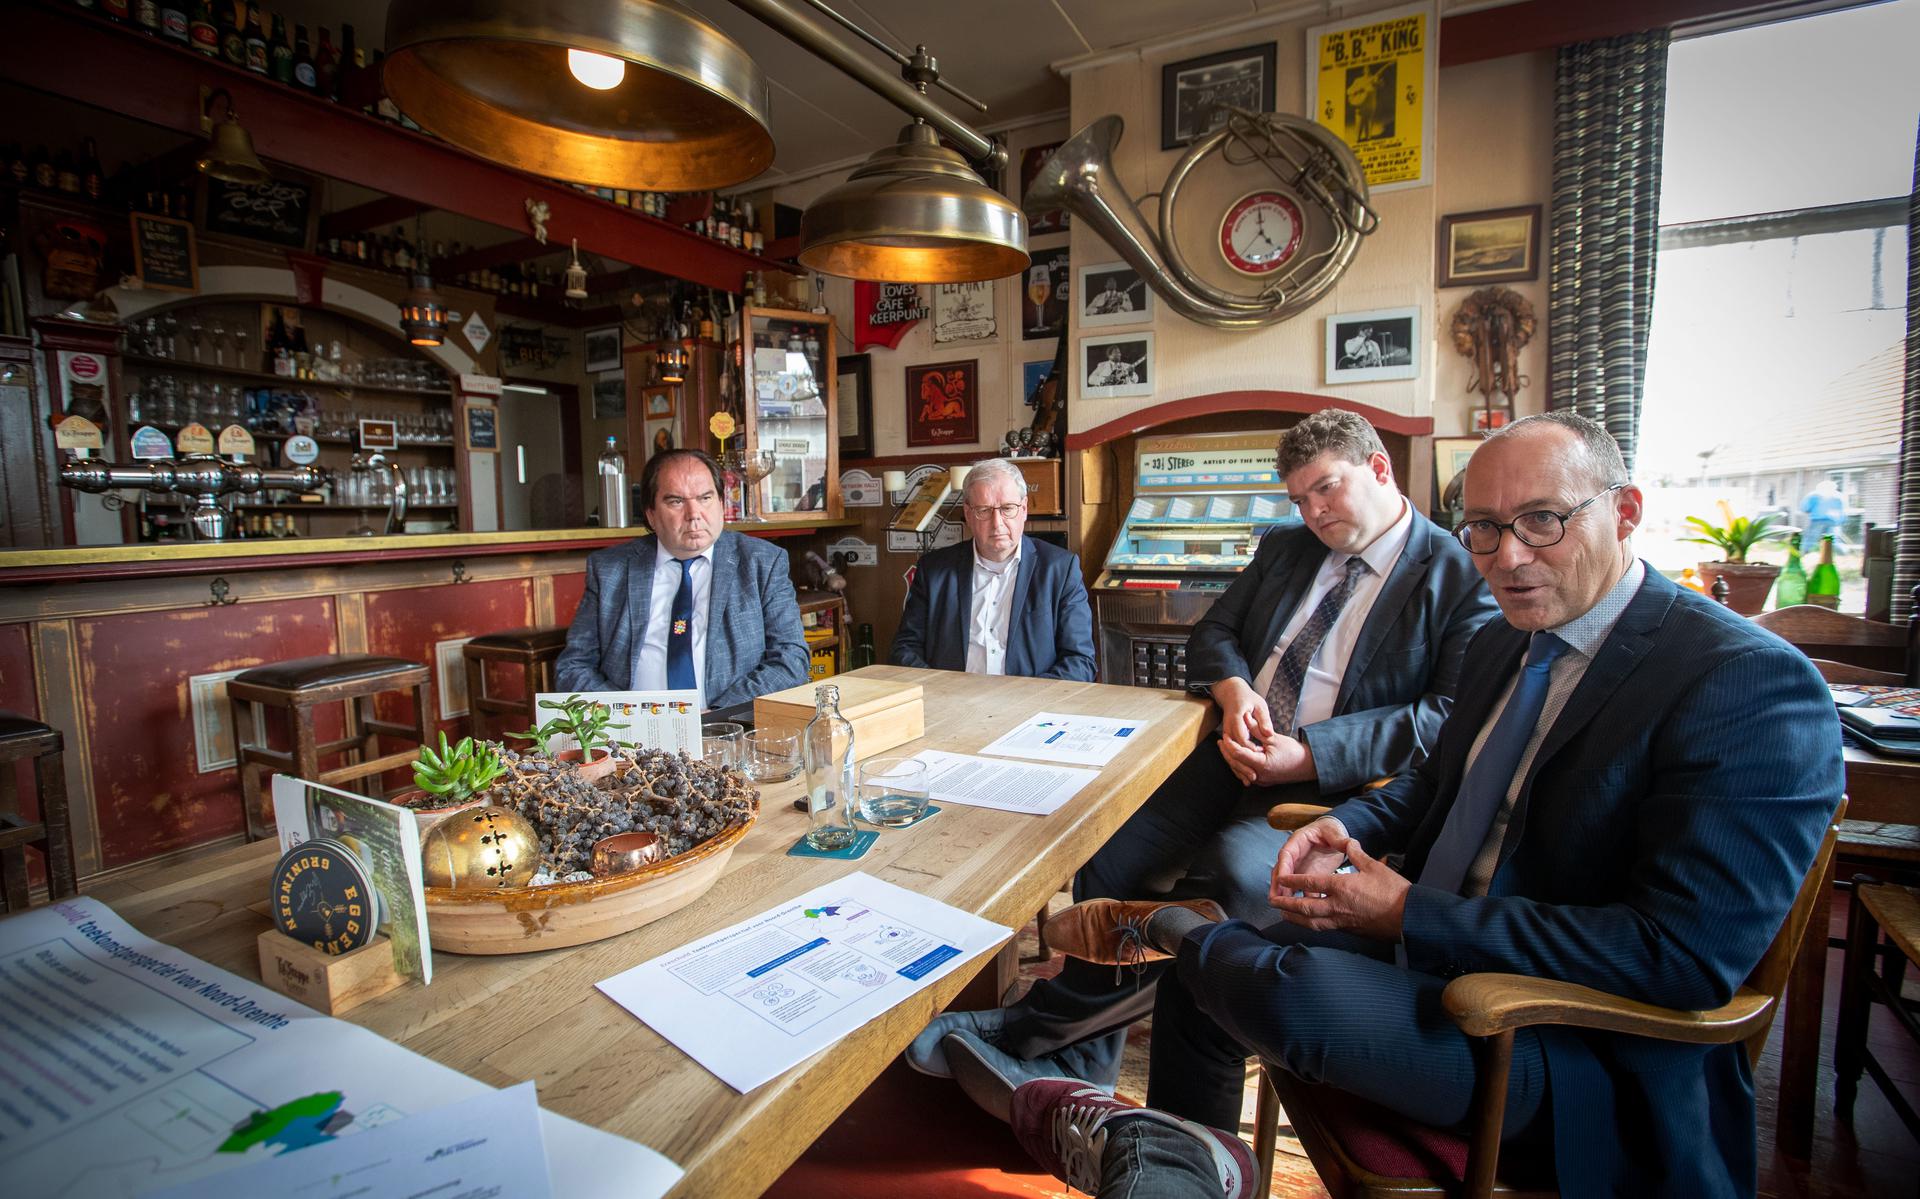 Presentatie compensatieplan (gestapelde) mijnbouw in Noord-Drenthe. V.l.n.r. Marcel Thijsen (burgemeester Tynaarlo), Tjisse Stelpstra (gedeputeerde Drenthe), Robert Meijer (wethouder Noordenveld), Anno Wietze Hiemstra (burgemeester Aa en Hunze). 